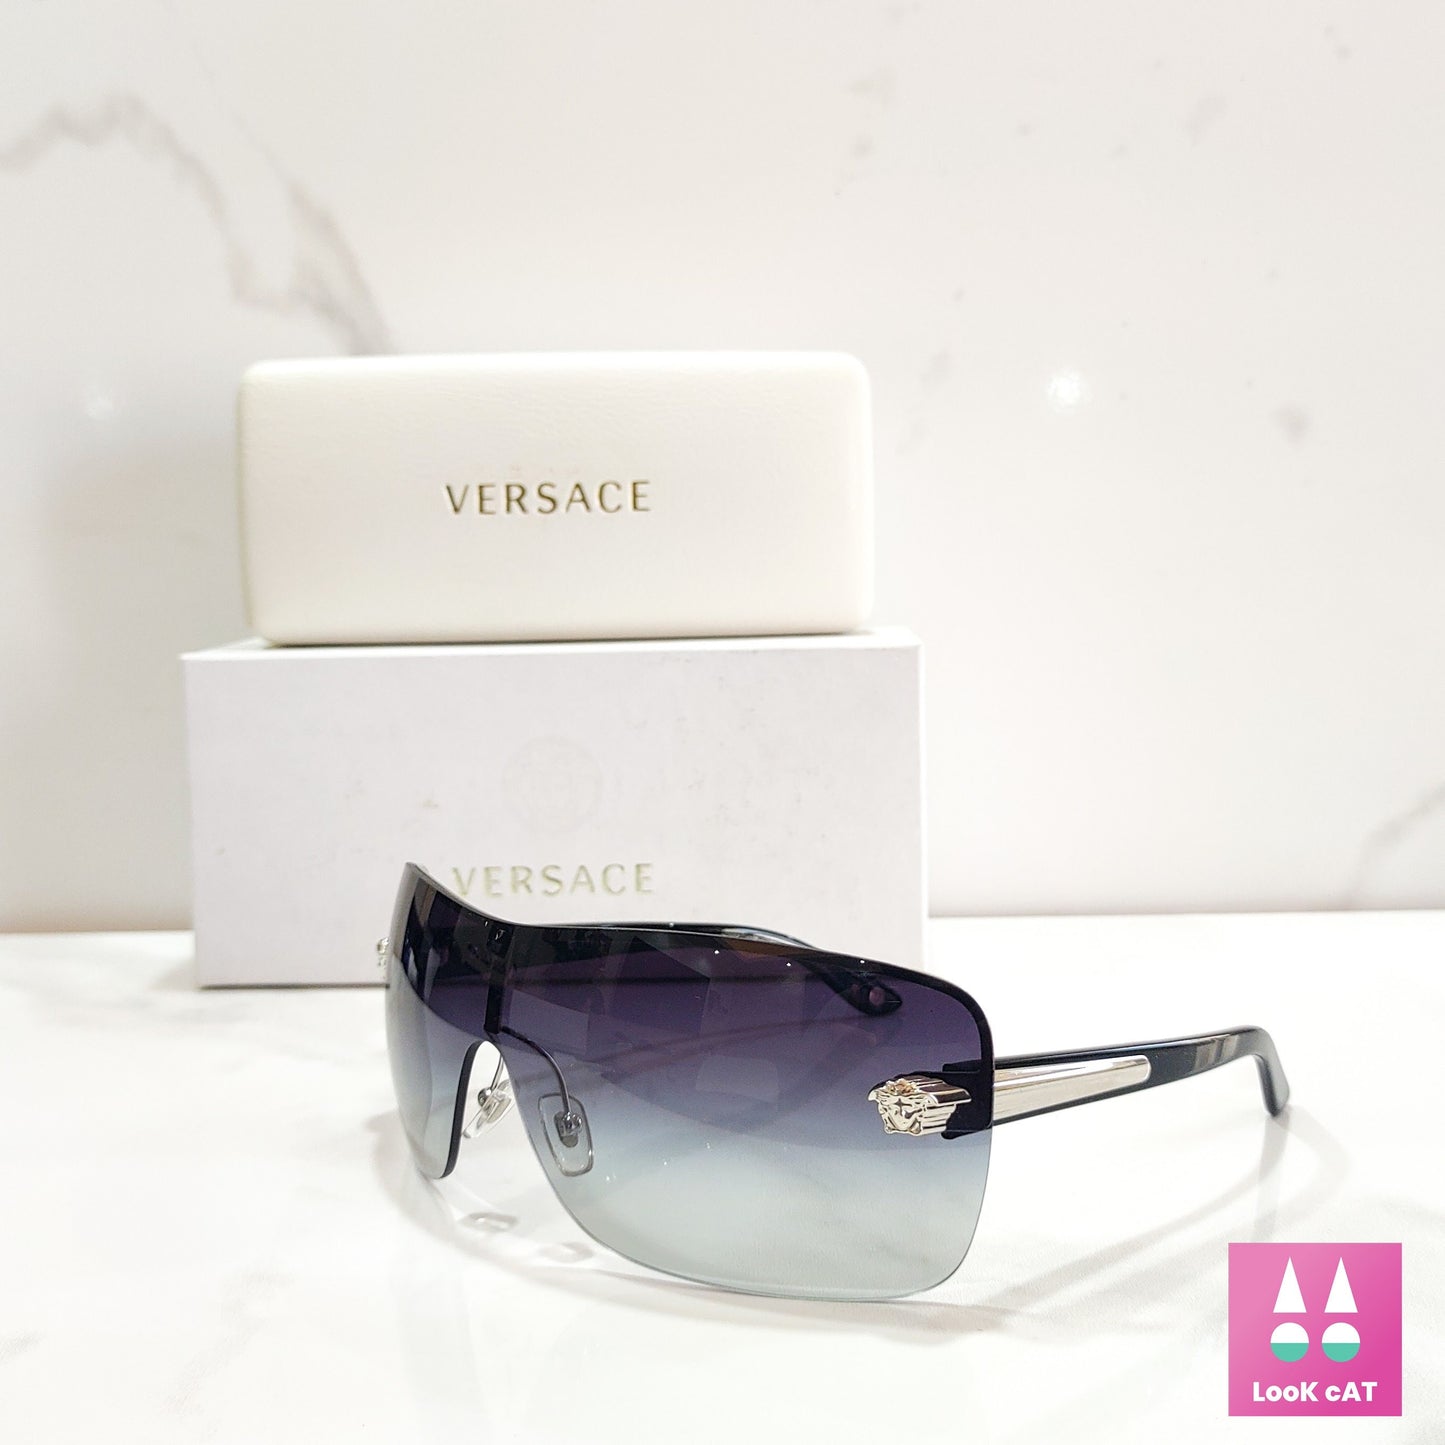 Versace 2119 occhiali da sole vintage con scudo avvolgente NOS mai usatiocchiali occhiali anni '90 y2k